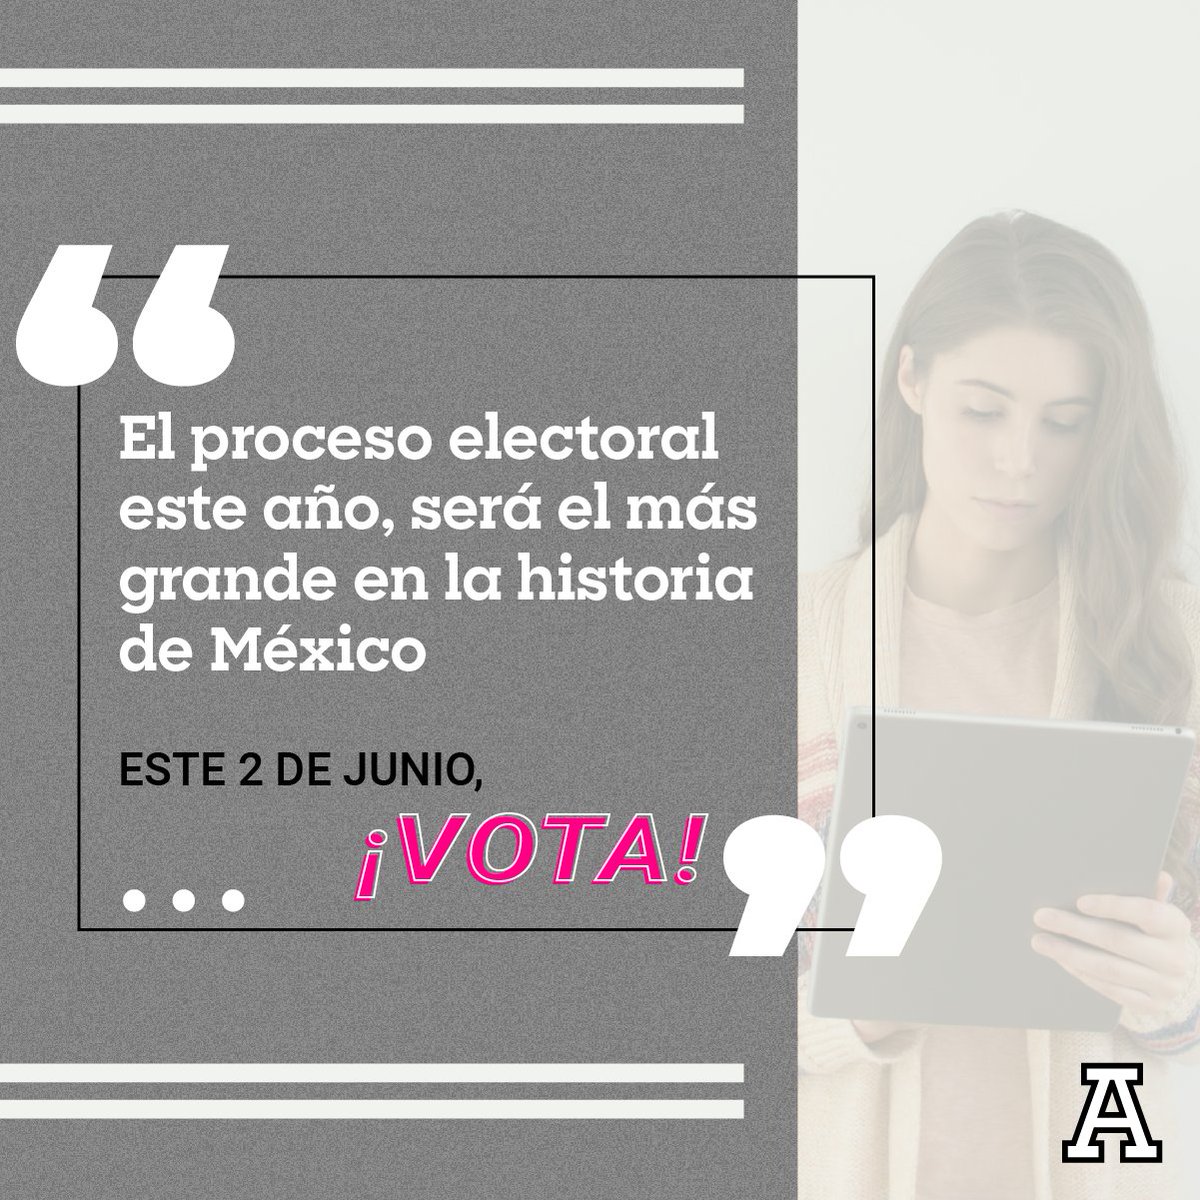 El proceso electoral este año, será el más grande en la historia de México. Este 2 de junio, ¡vota!

#AnáhuacVeracruz #SomosAnáhuac